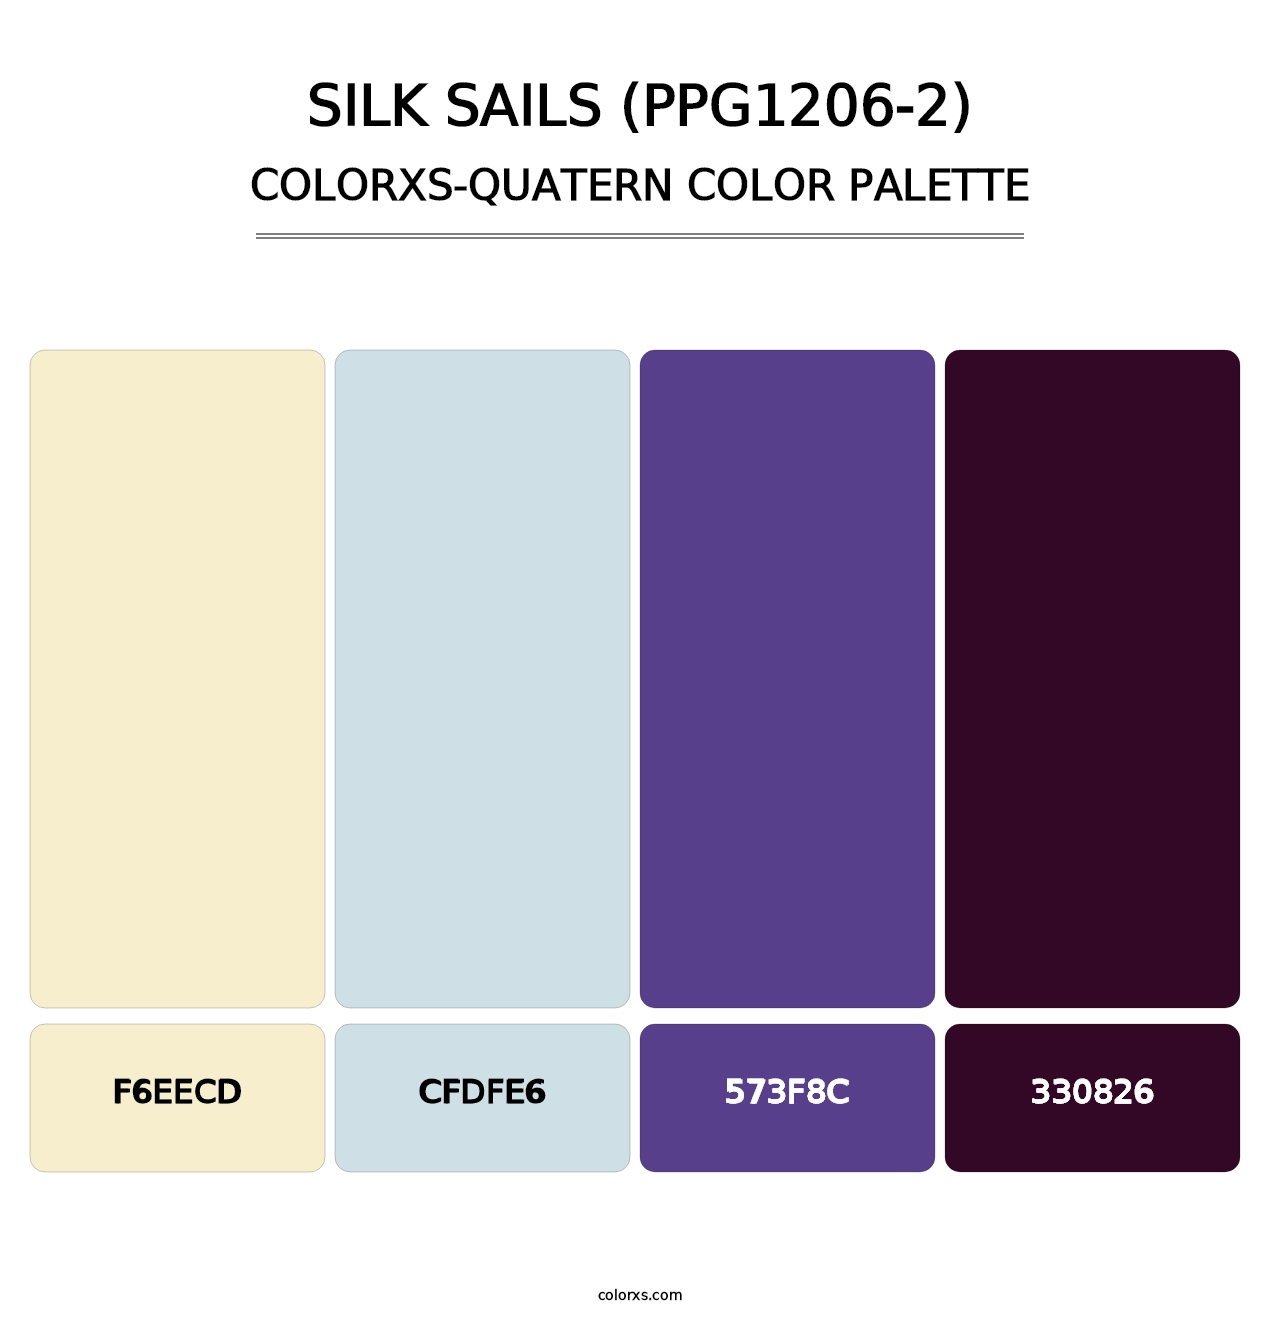 Silk Sails (PPG1206-2) - Colorxs Quatern Palette